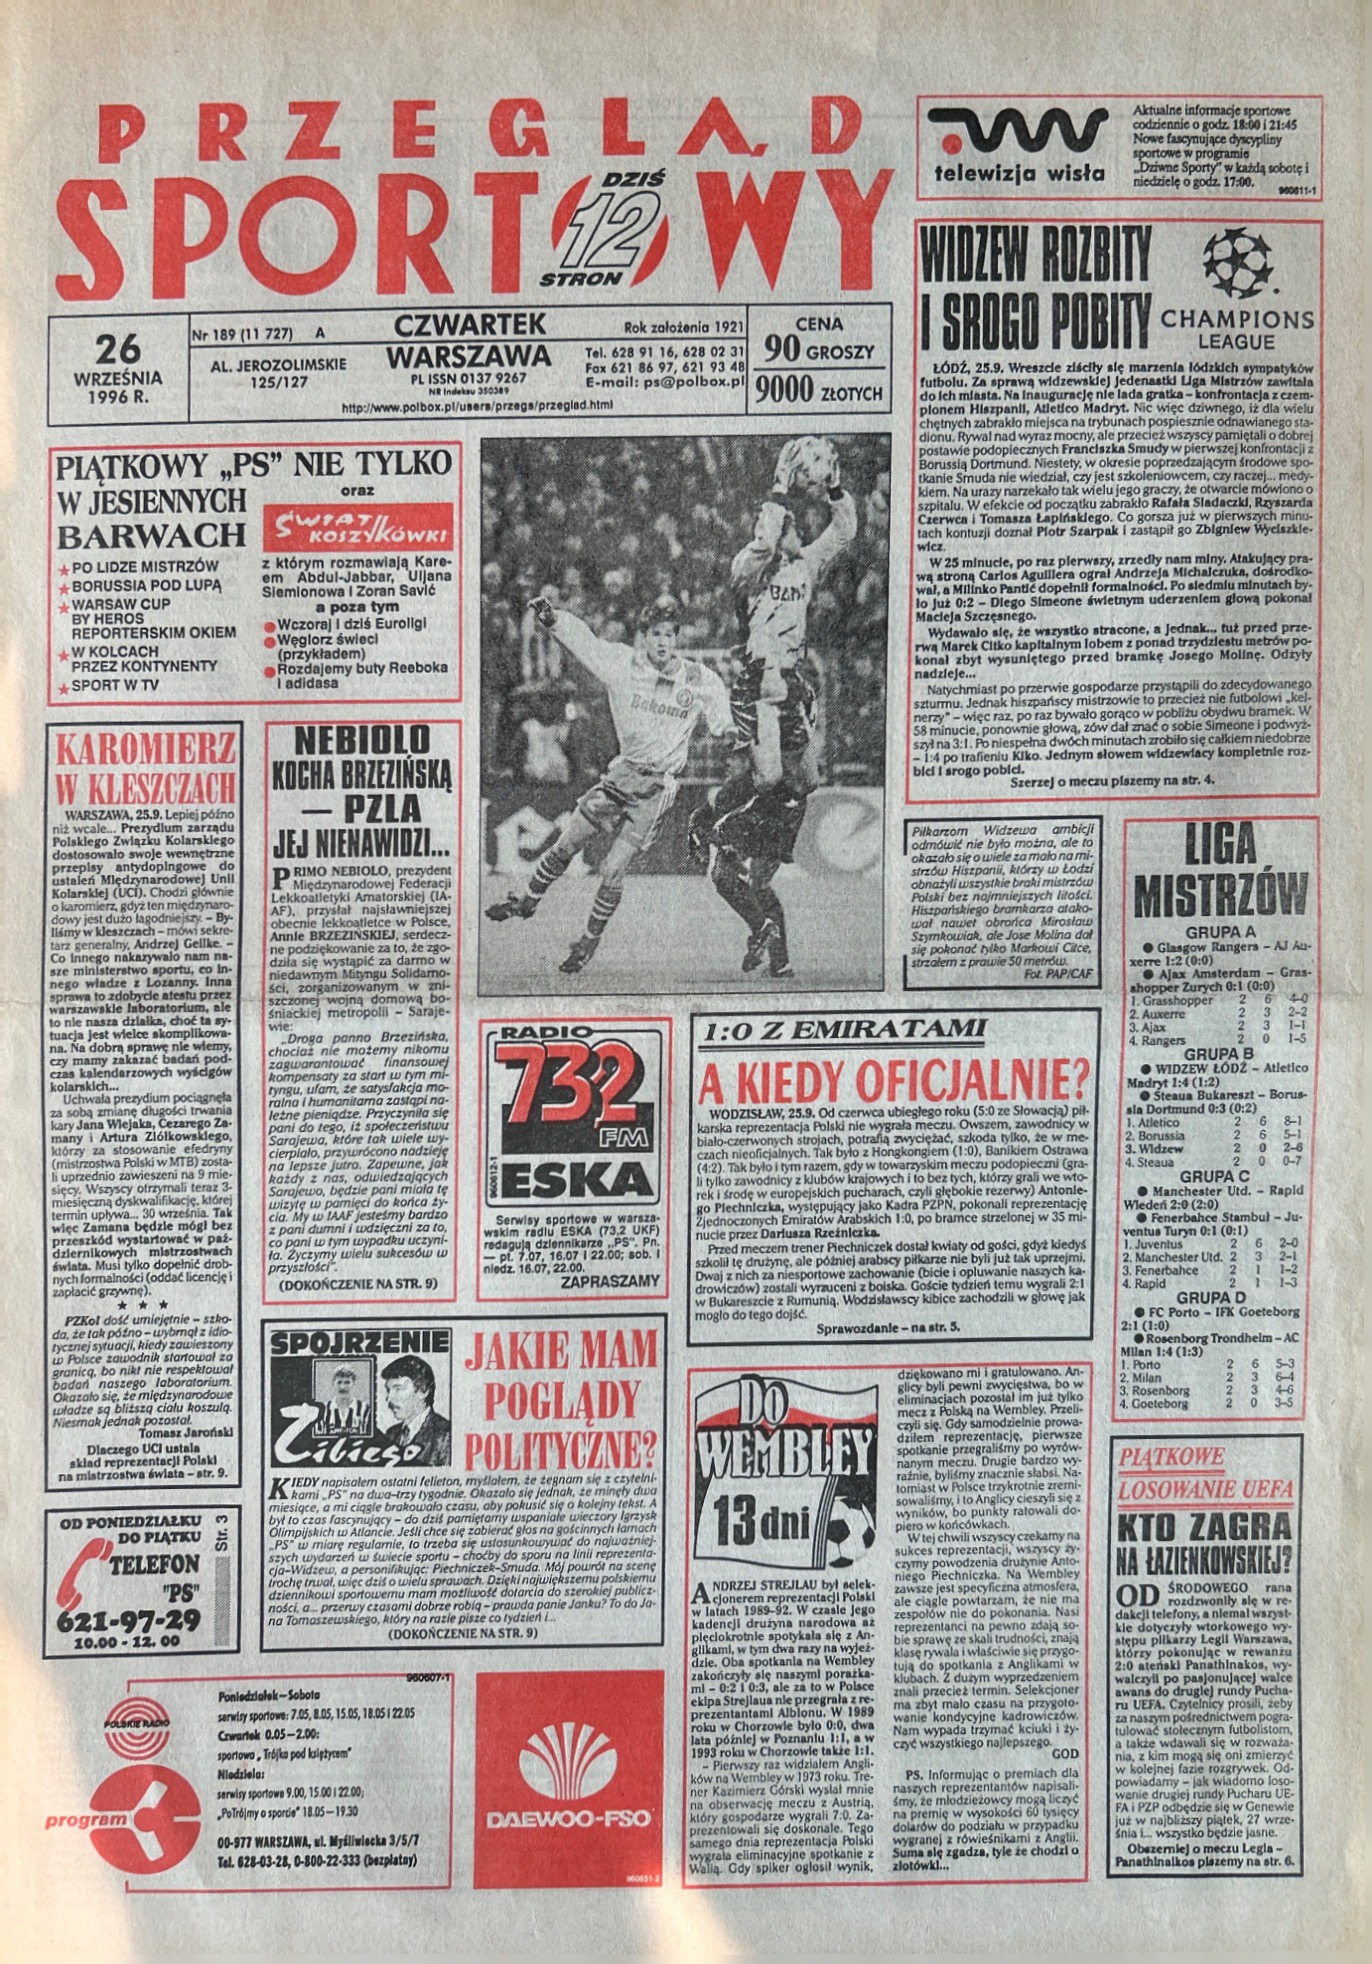 Przegląd Sportowy po meczu Widzew Łódź - Atlético Madryt 1:4 (25.09.1996)